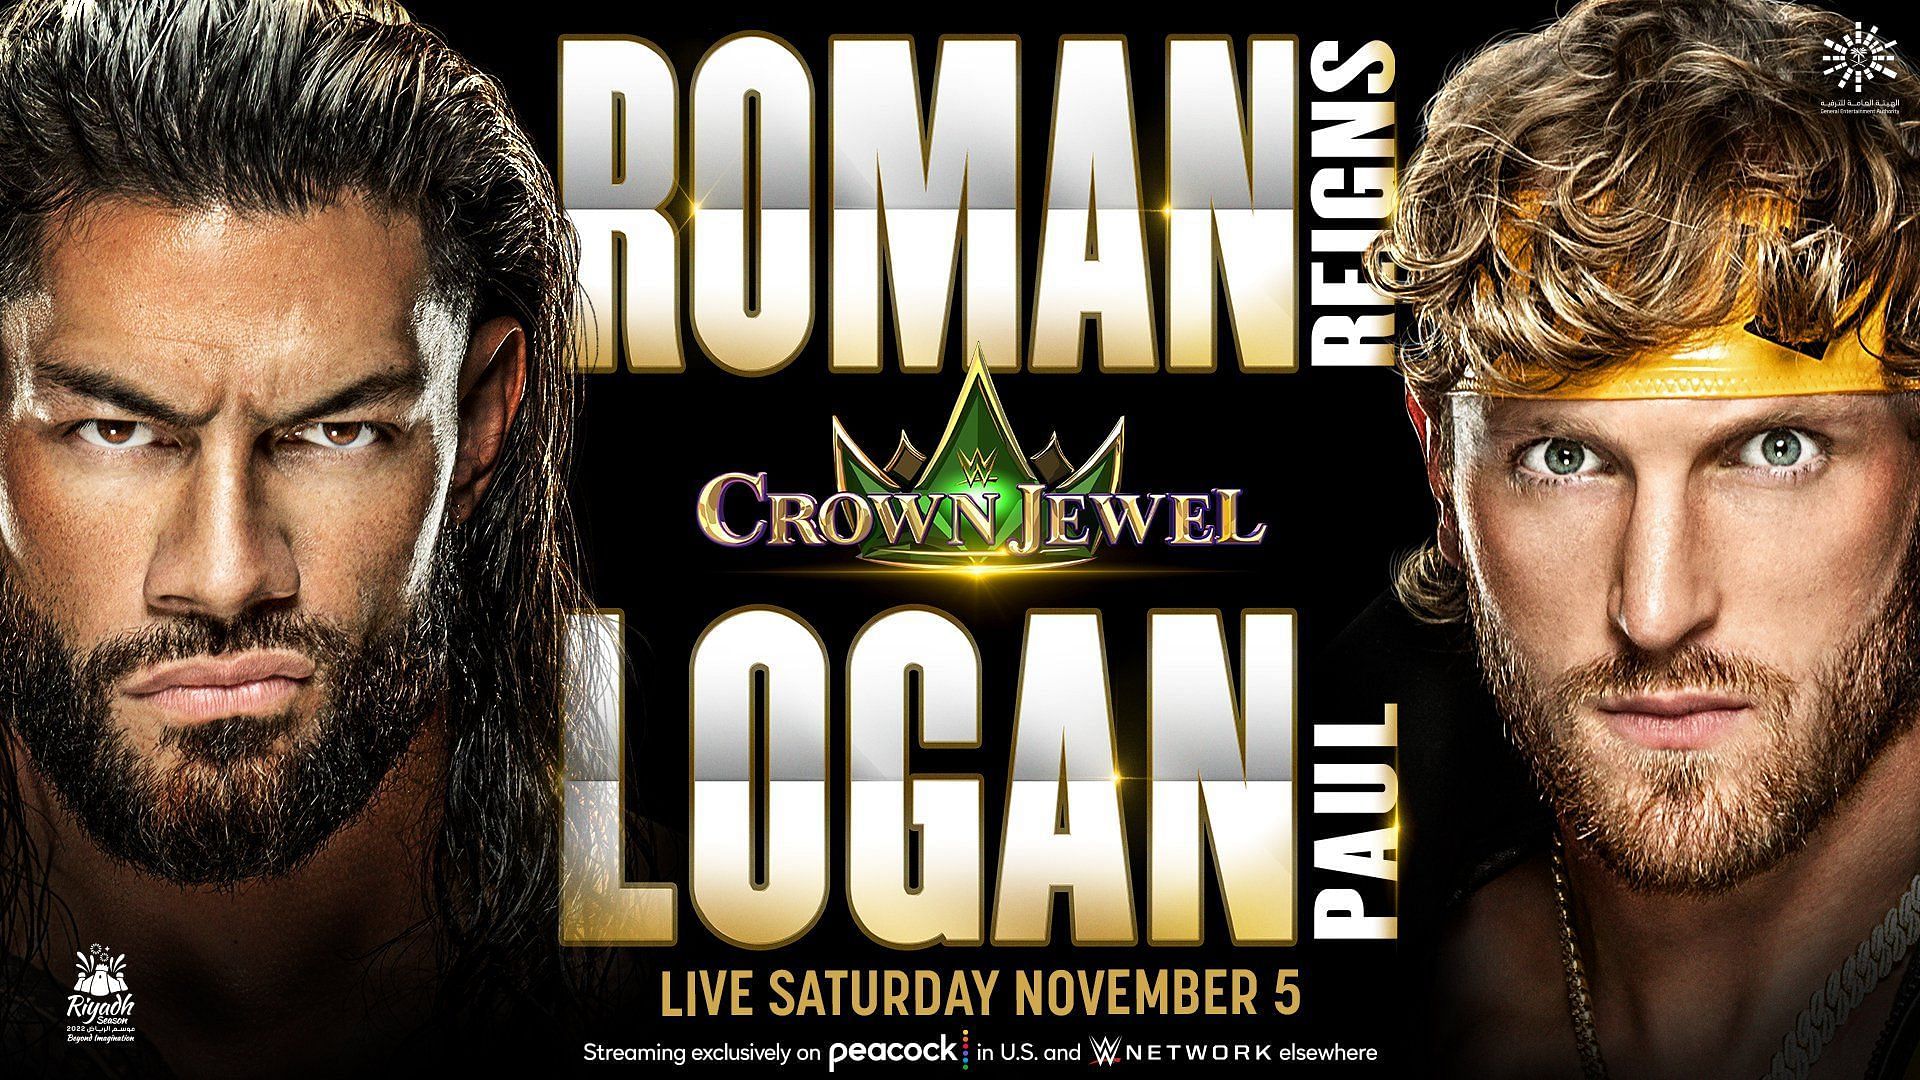 WWE Crown Jewel is airing this Saturday